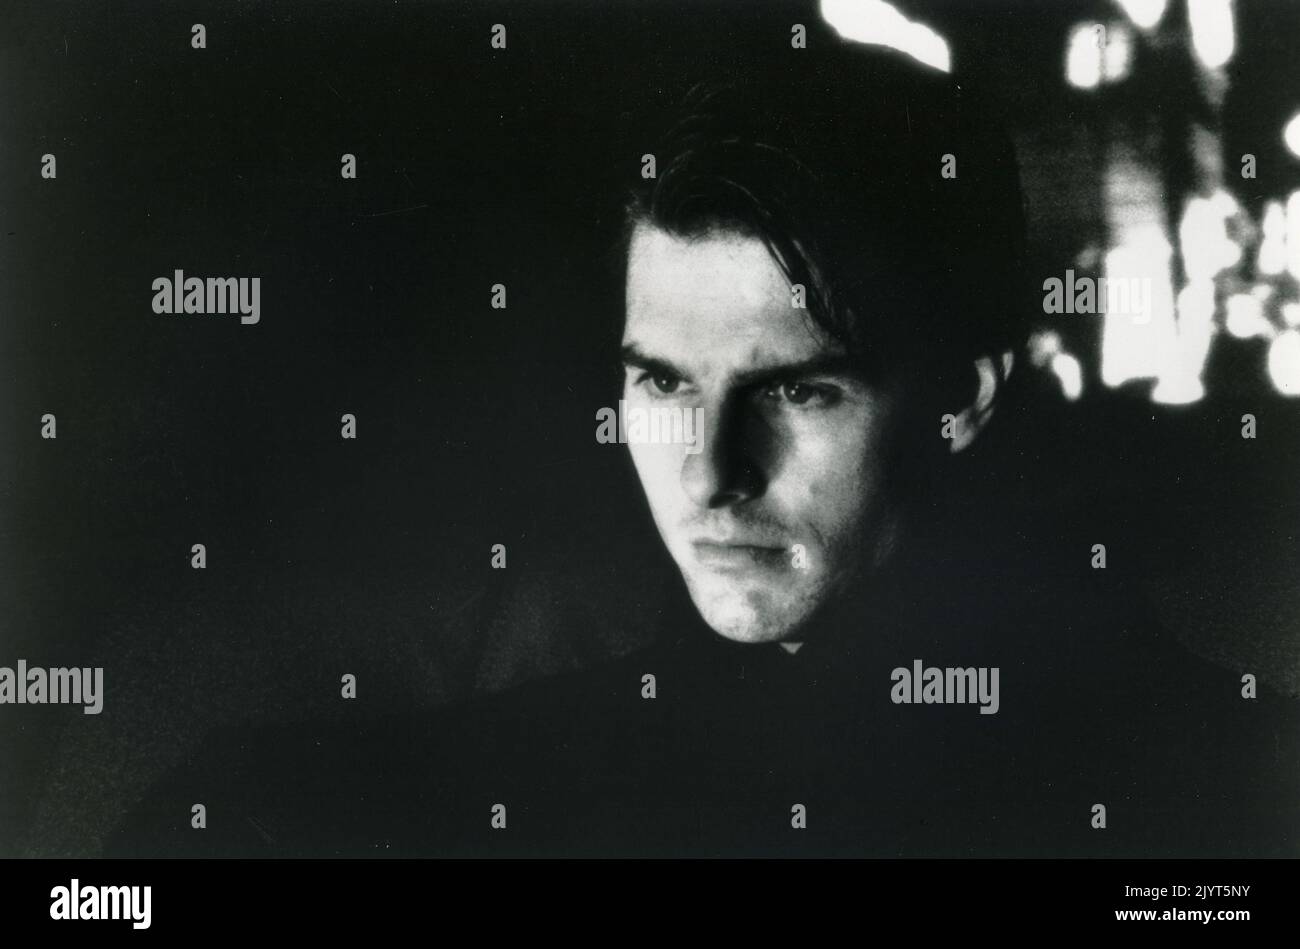 El actor estadounidense Tom Cruise en la película Eyes Wide Shut, EE.UU. 1999 Foto de stock